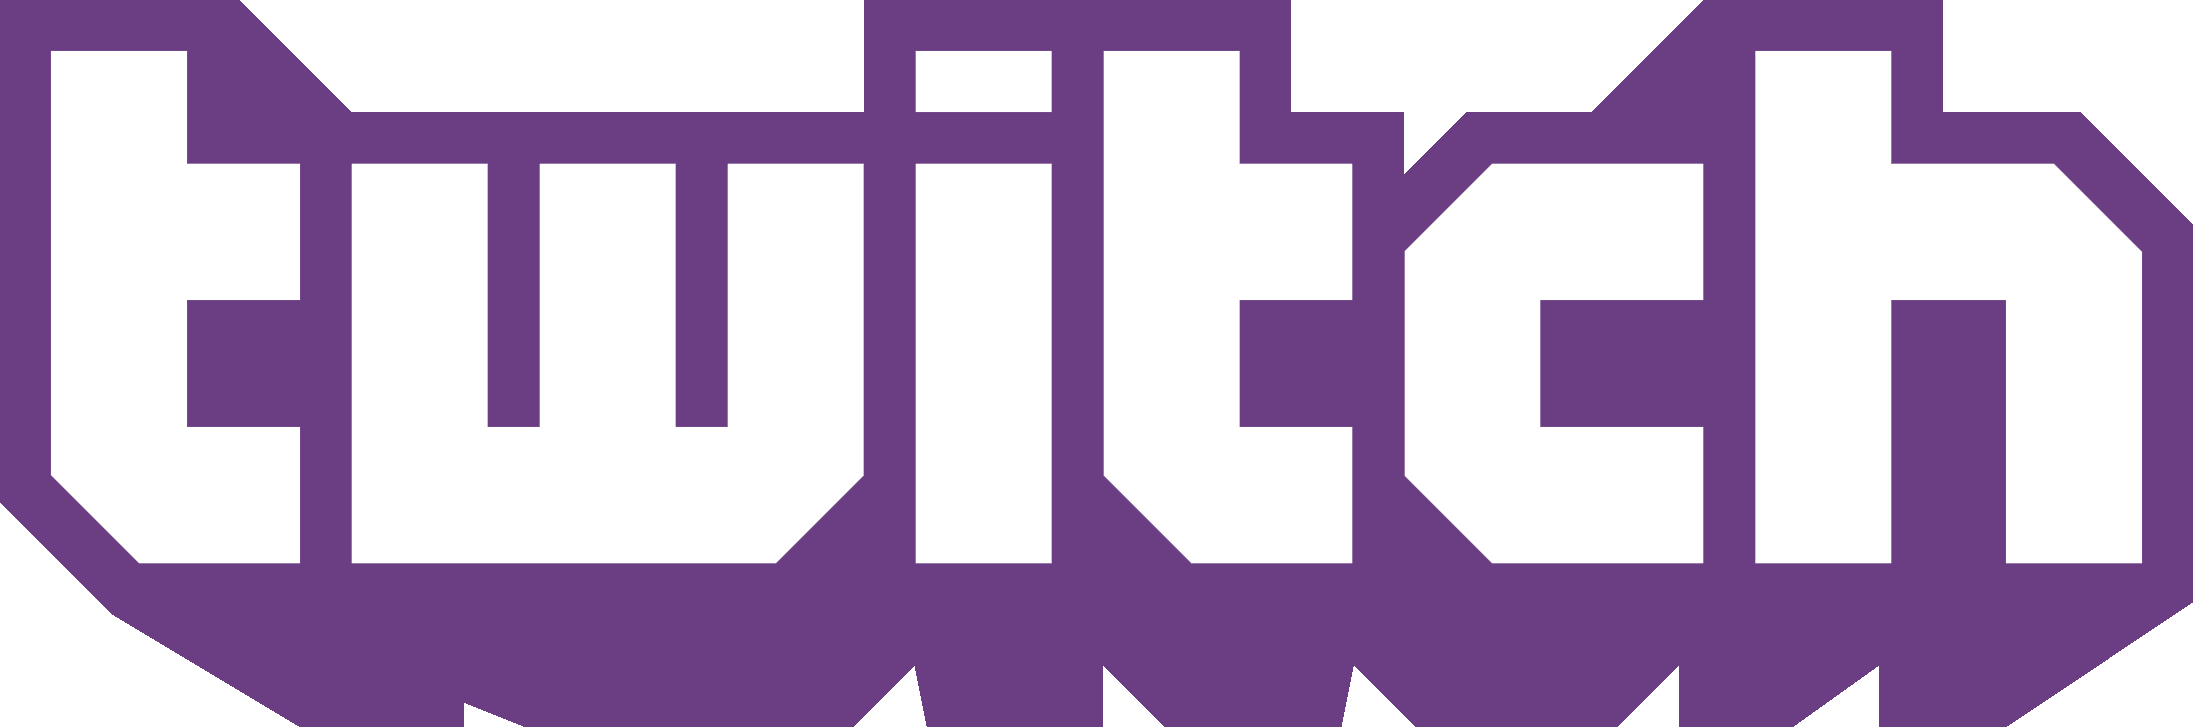 twitch-logo-black